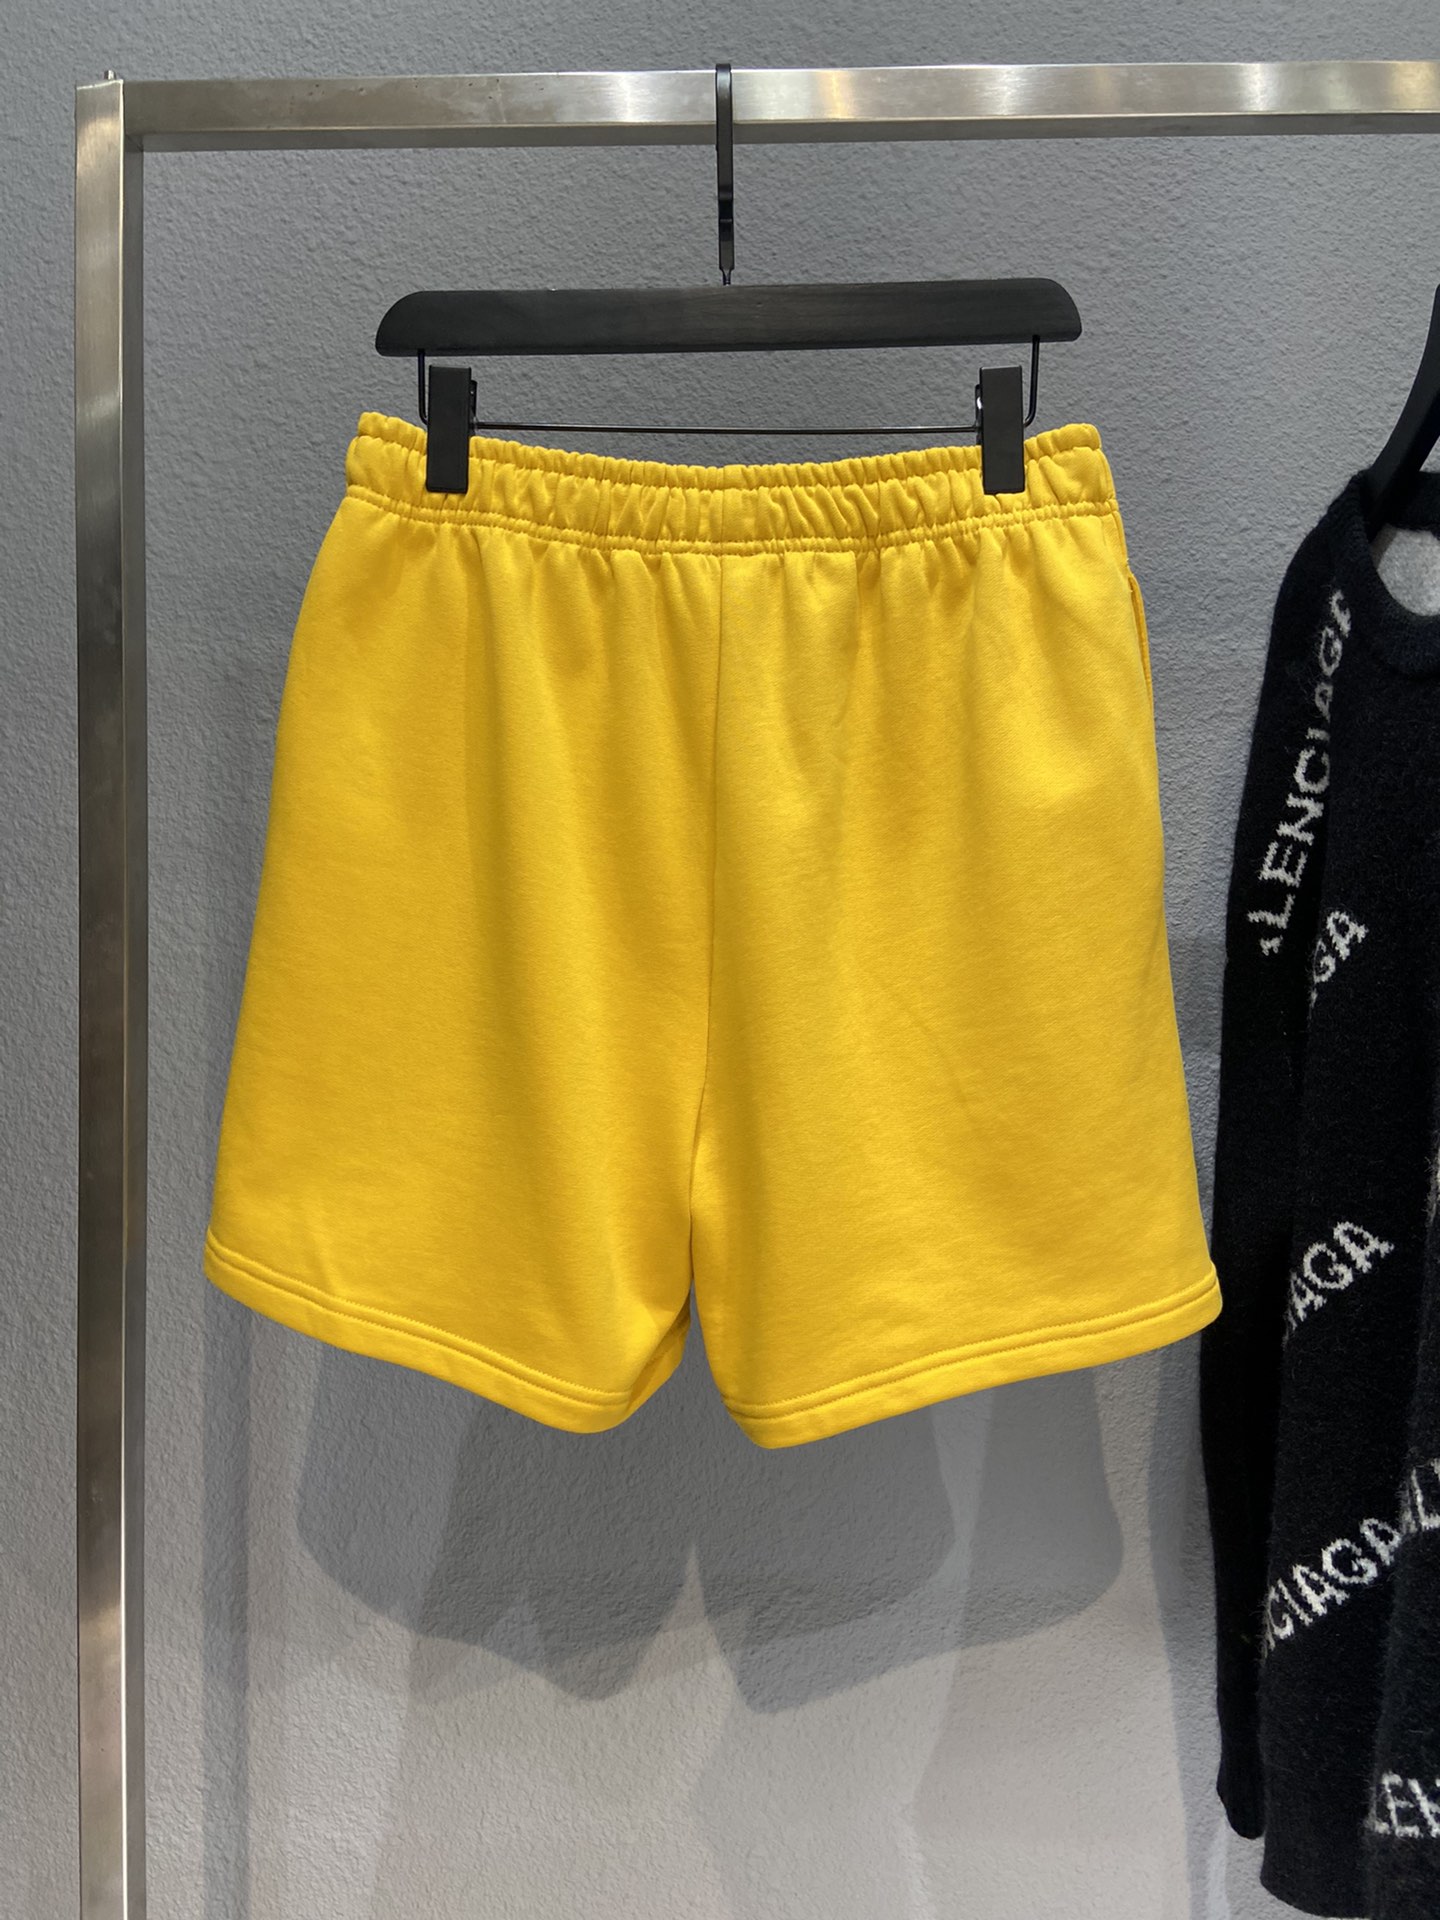 Balenciaga Shorts Cotton in Yellow